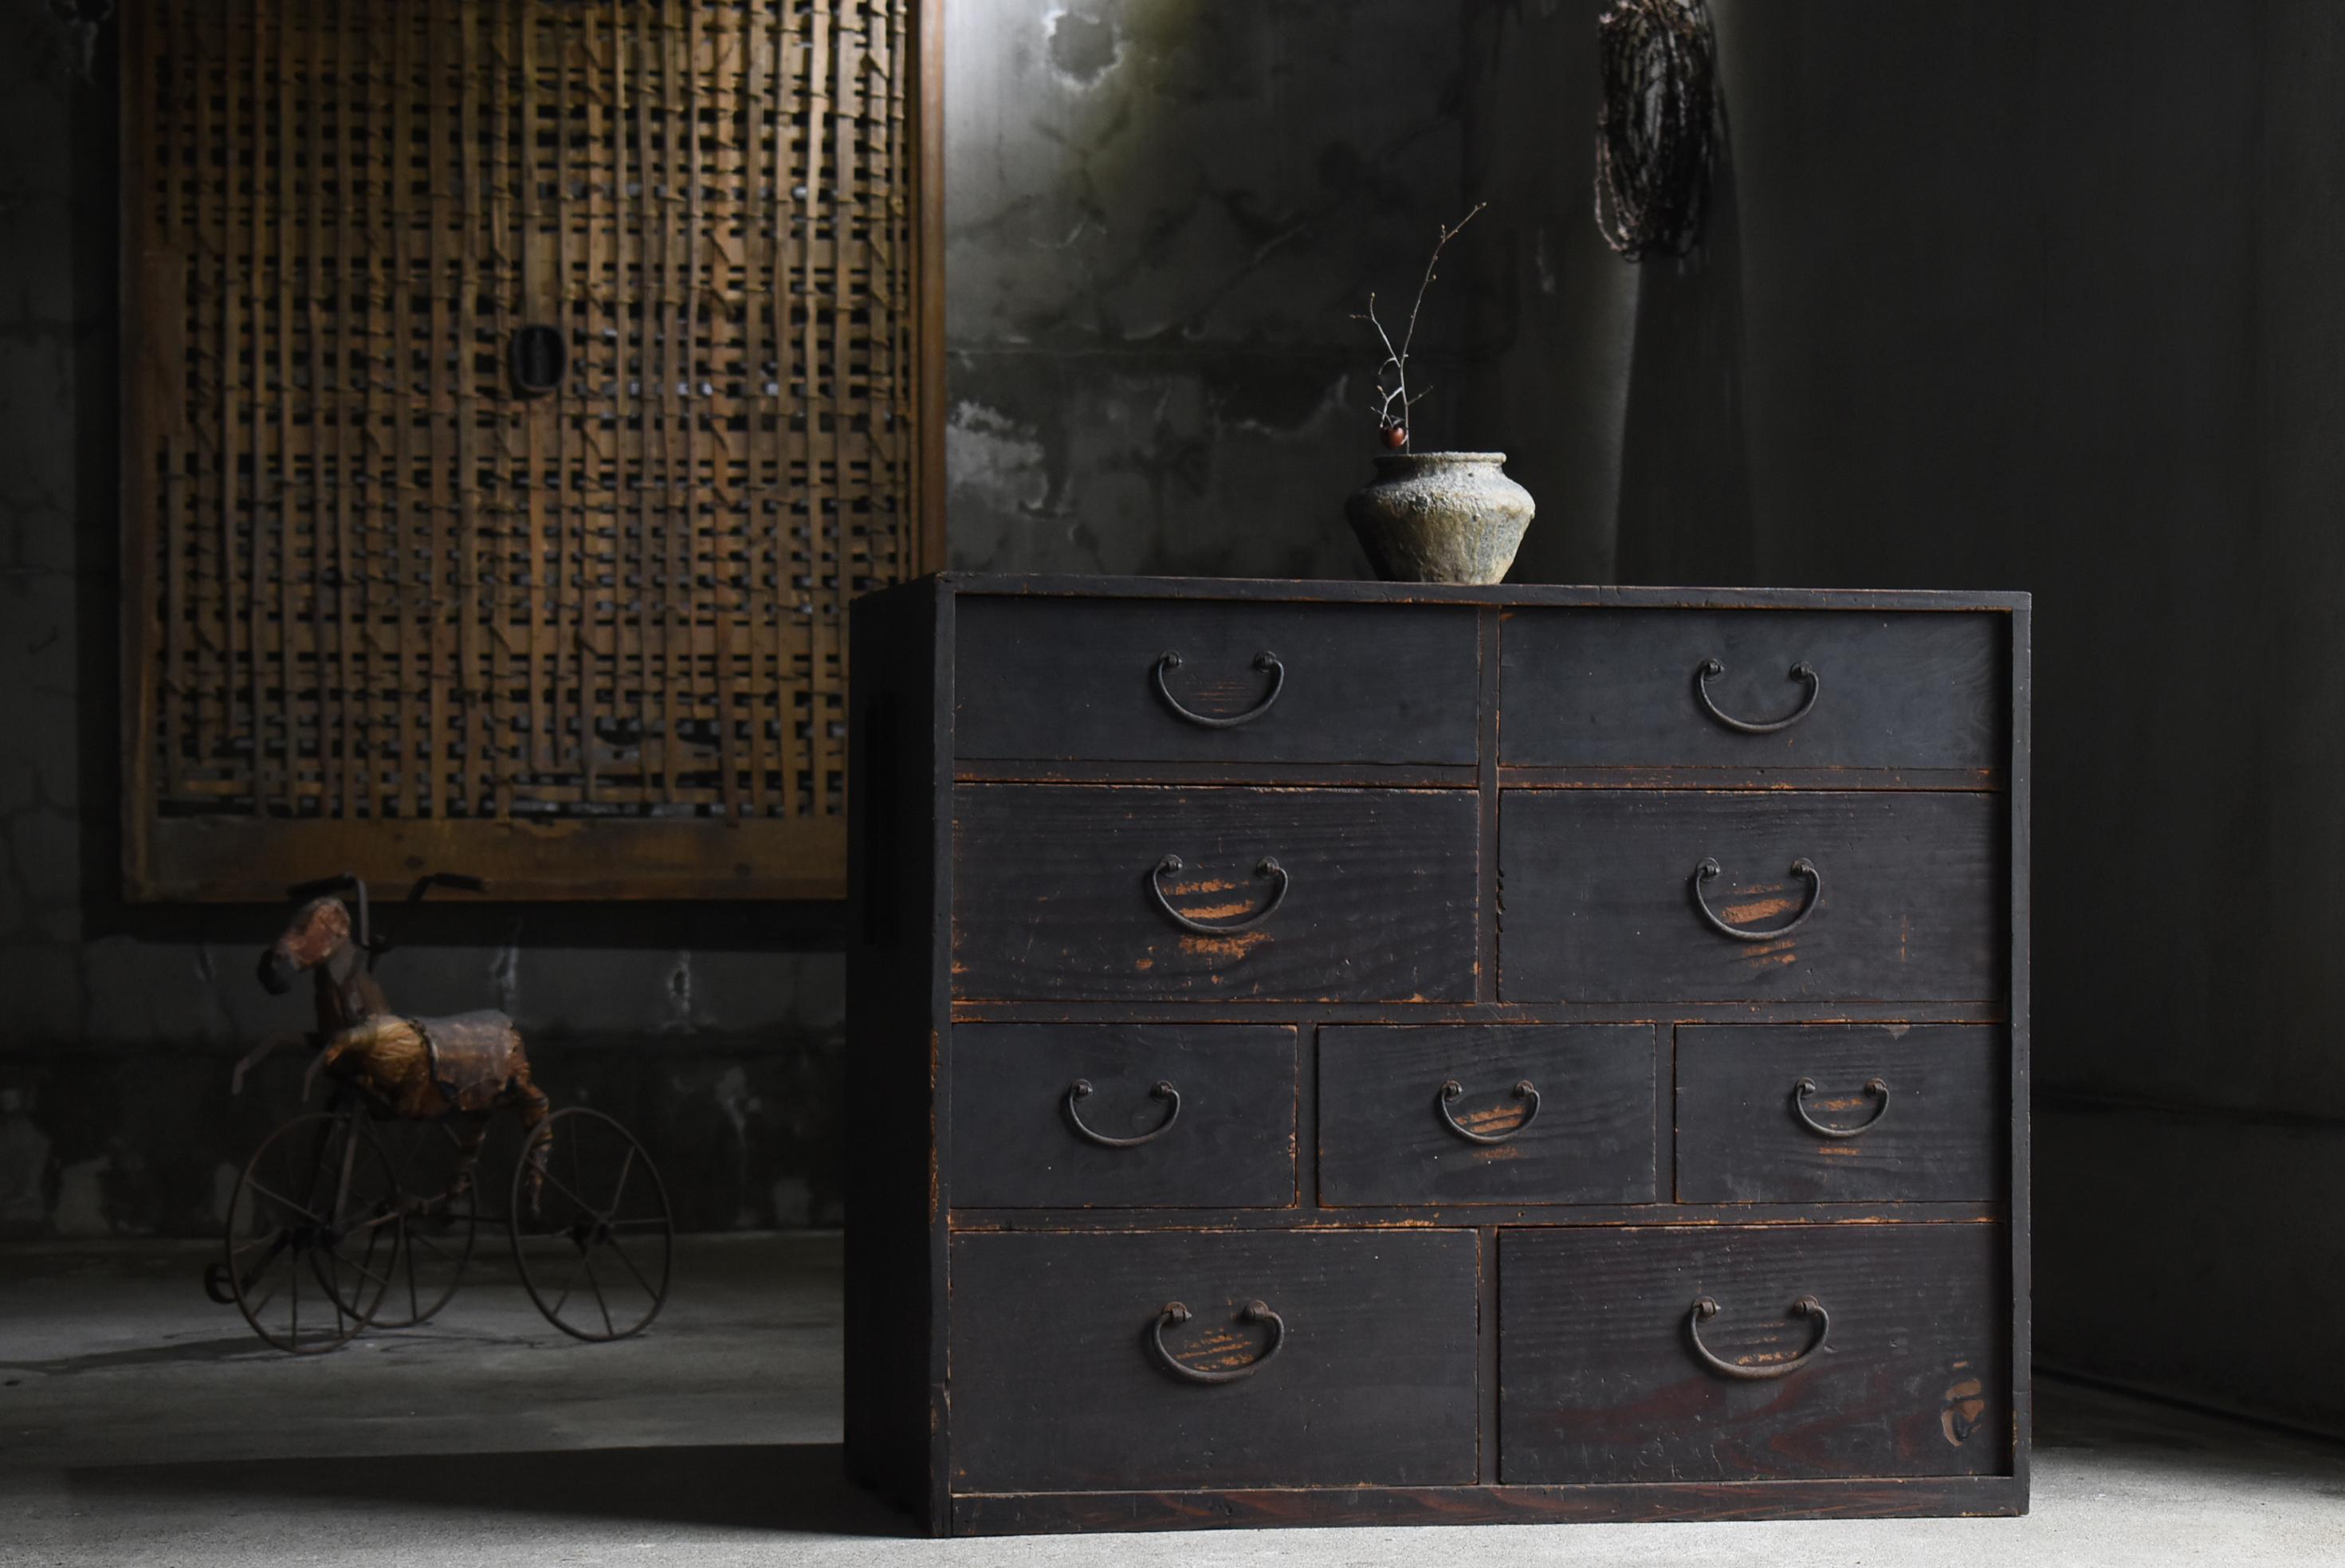 Sehr alter großer Schubladenschrank aus Japan.
Die Möbel stammen aus der Meiji-Periode (1860-1900er Jahre).
MATERIAL ist Zedernholz. Die Griffe sind aus Eisen gefertigt.

Das Design ist einfach und schlank.
Es ist ein sehr schönes Möbelstück mit